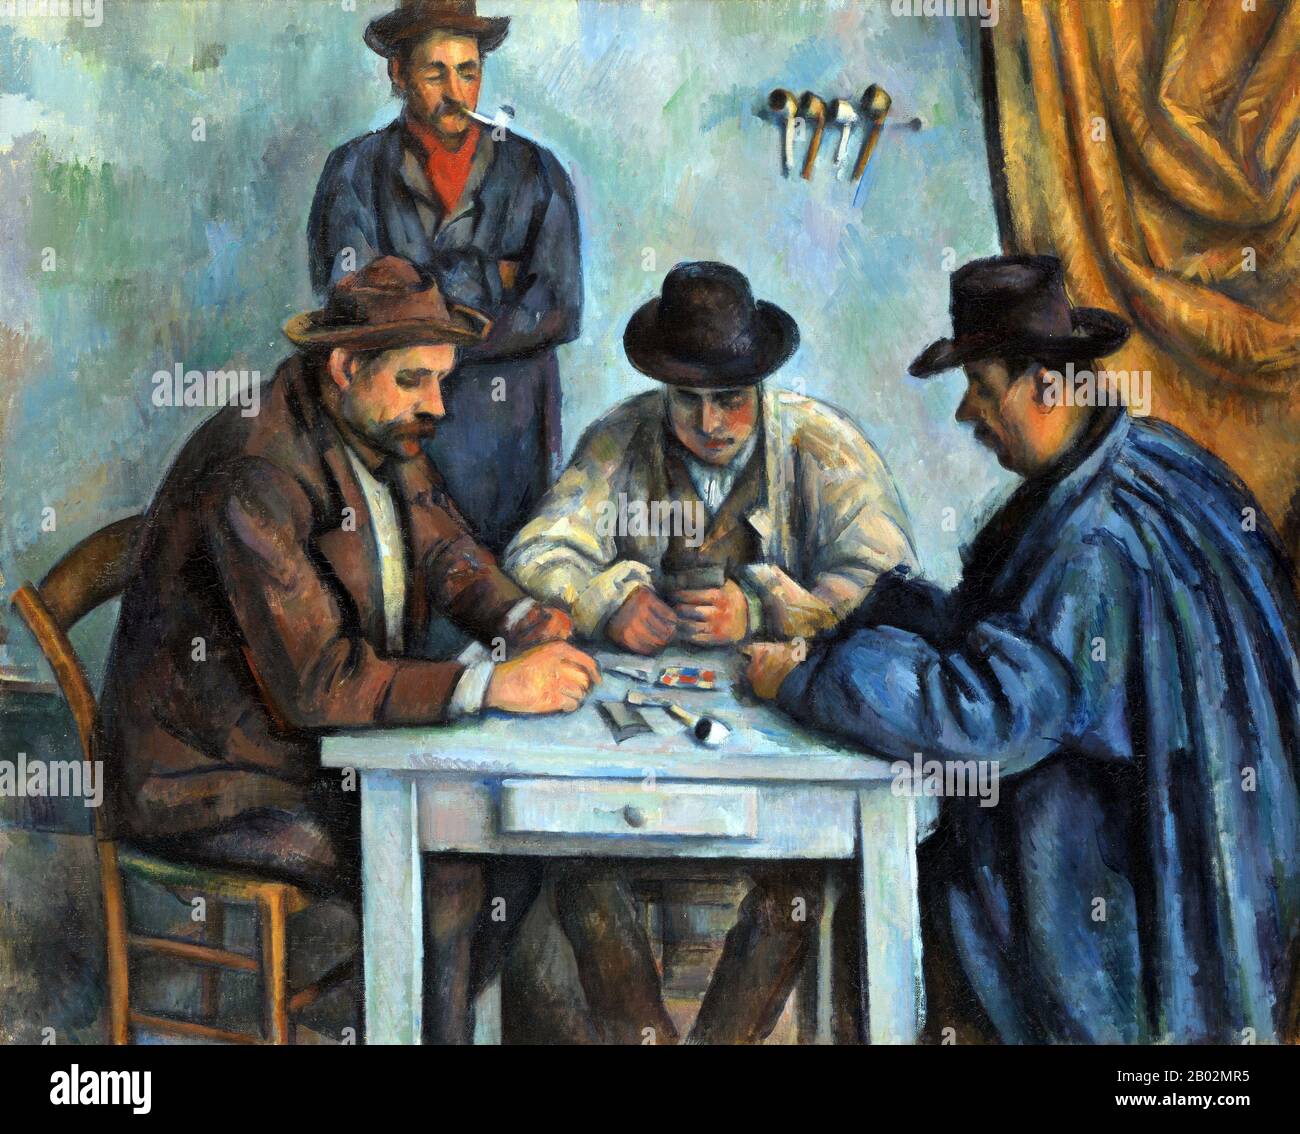 The Card Players ist eine Serie von Ölbildern des französischen Post-Impressionisten Paul Cézanne. Gemalt während Cézannes Endzeit Anfang der 1890er Jahre, gibt es fünf Gemälde in der Serie. Die Versionen variieren in der Größe und in der Anzahl der abgebildeten Spieler. Cézanne hat auch zahlreiche Zeichnungen und Studien zur Vorbereitung der Card-Player-Serie abgeschlossen. Eine Version Der Kartenspieler wurde 2011 an die Royal Family of Qatar zu einem Preis verkauft, der unterschiedlich auf 250 bis 300 Millionen Dollar geschätzt wurde und damit das teuerste Kunstwerk ist, das jemals verkauft wurde. Stockfoto